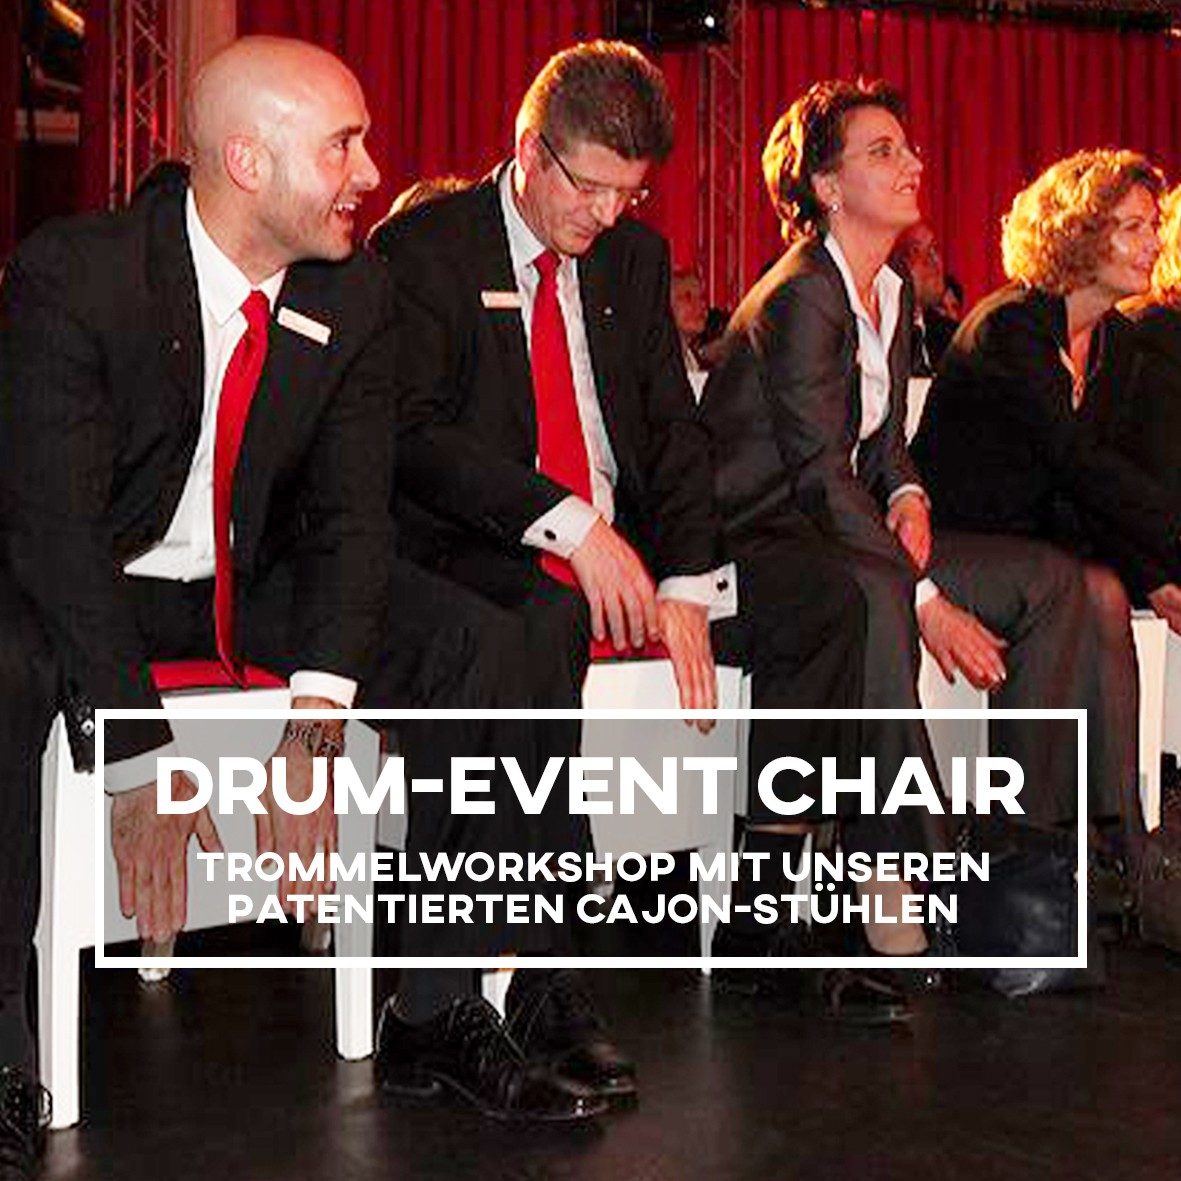 DRUM OLE Trommelworkshop, Drum-Event mit Cajon-Stühlen